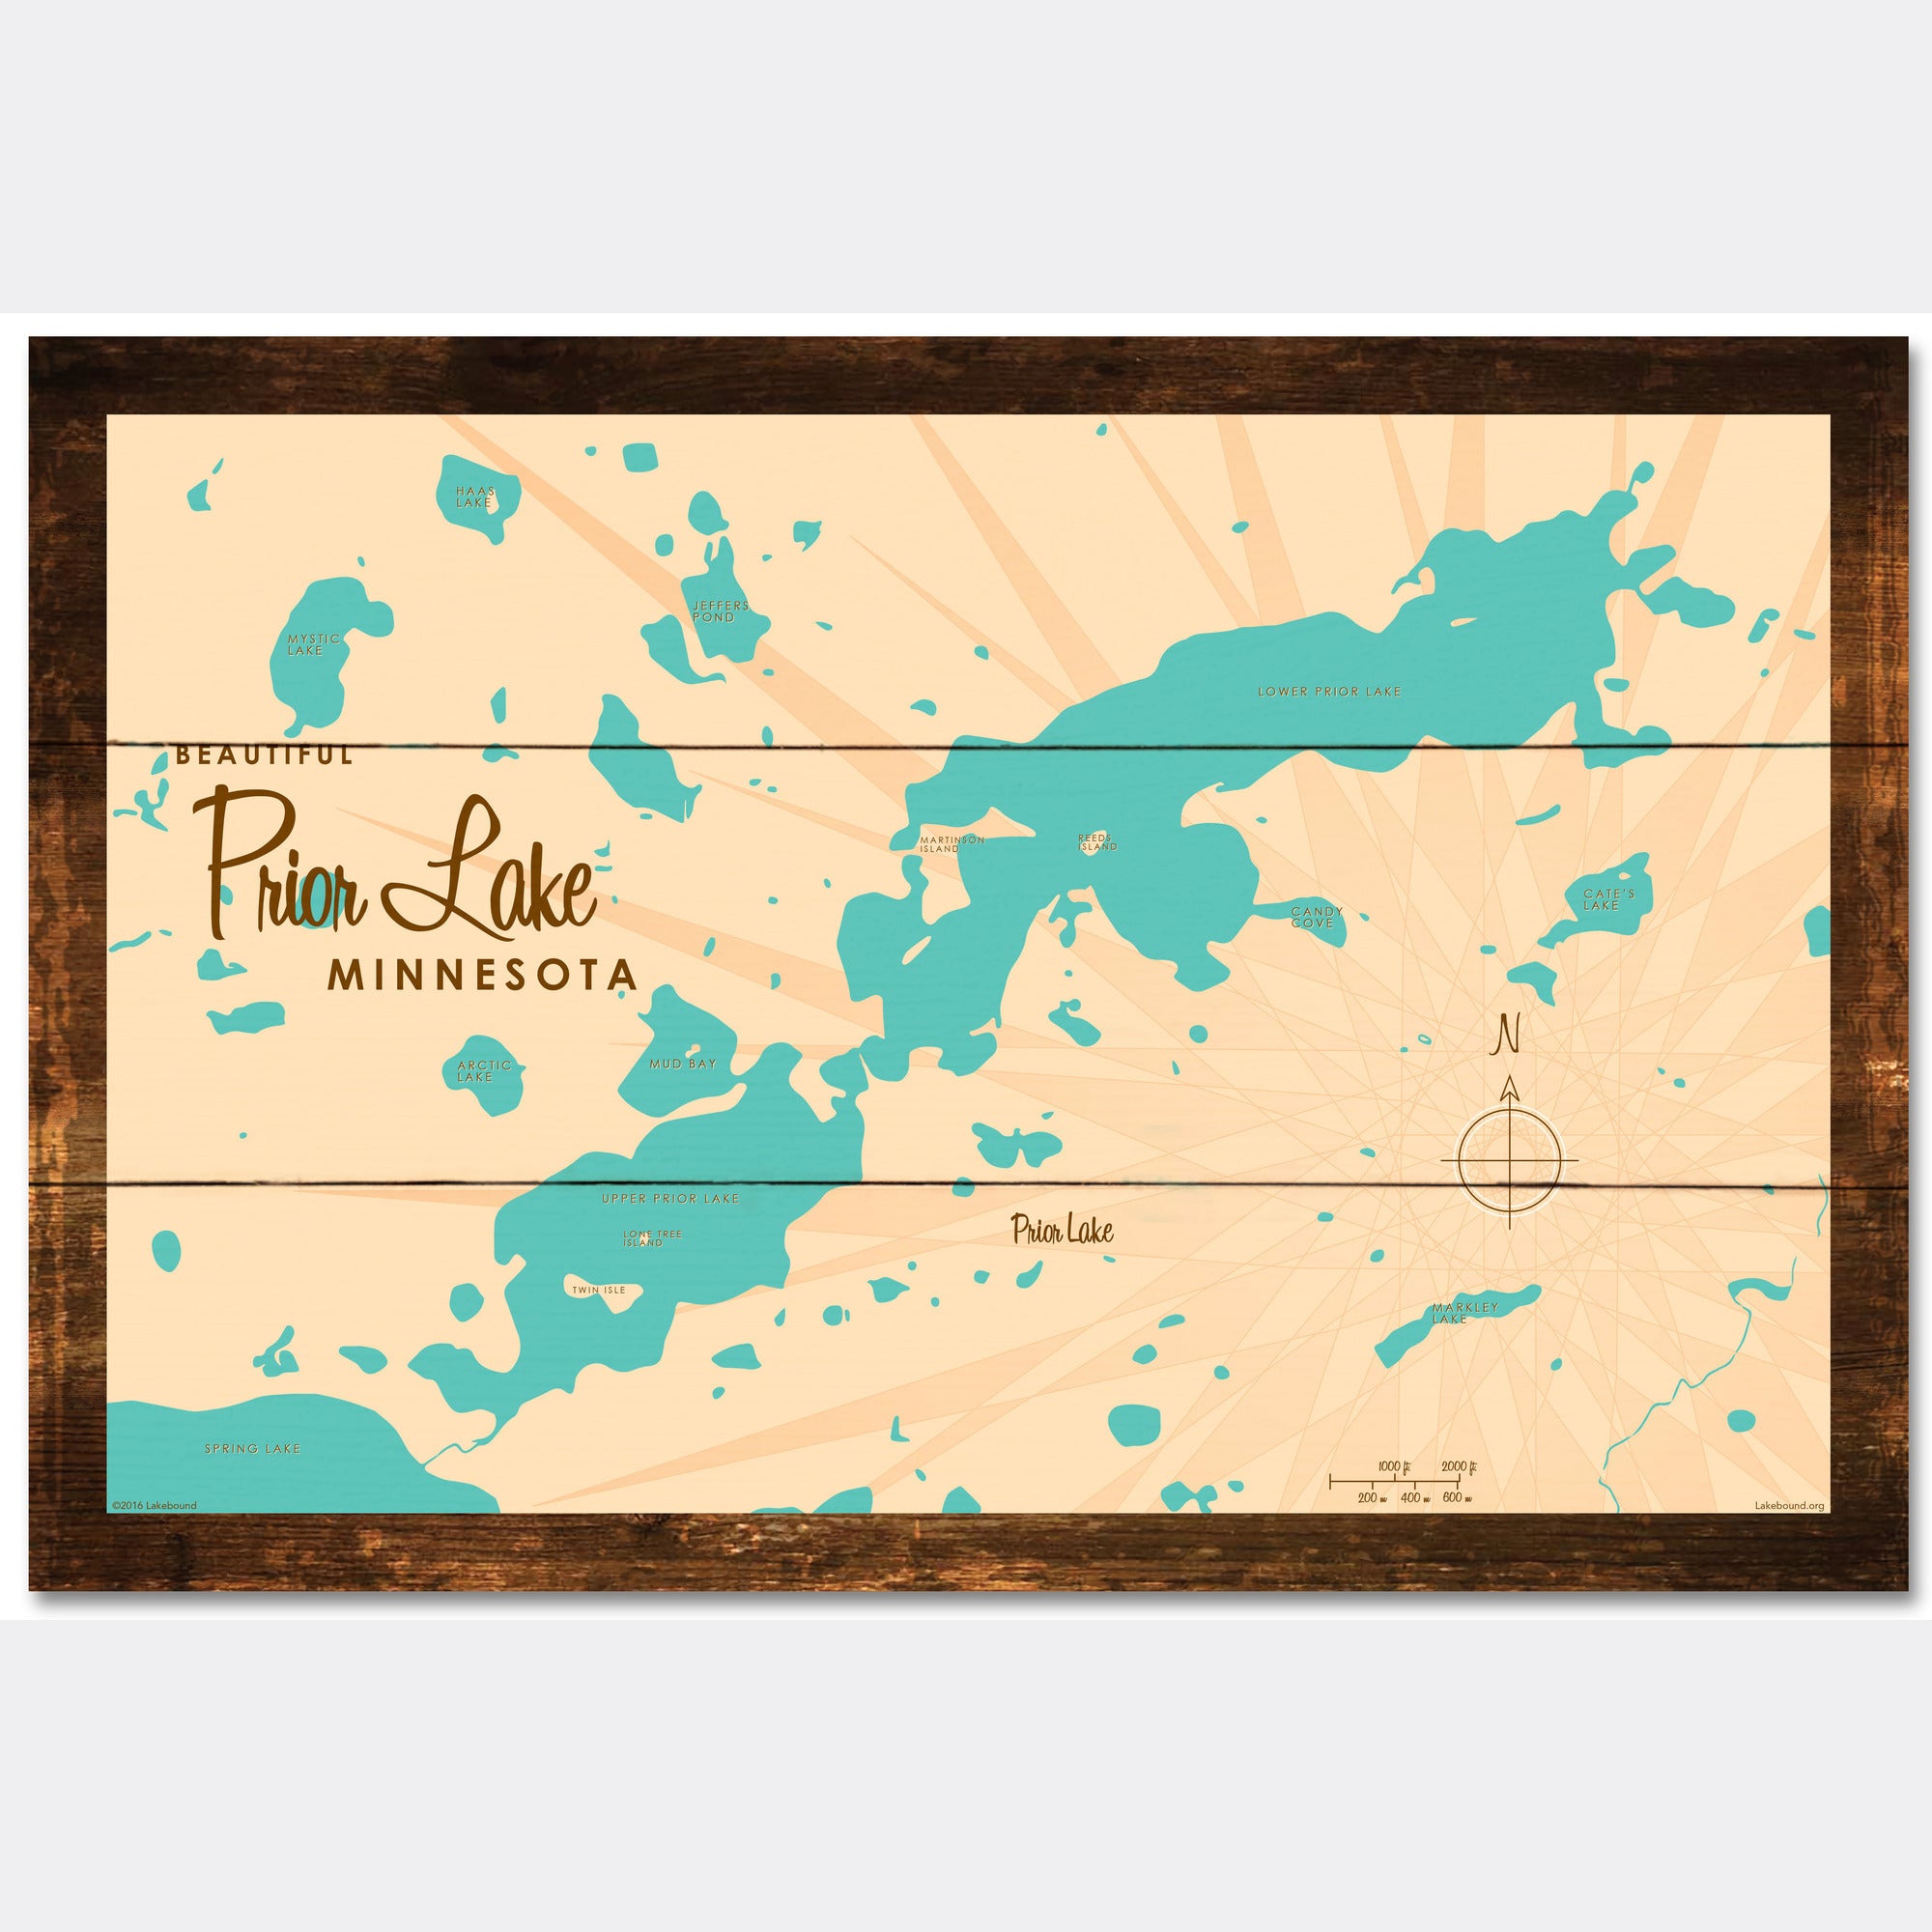 Prior Lake Minnesota, Rustic Wood Sign Map Art